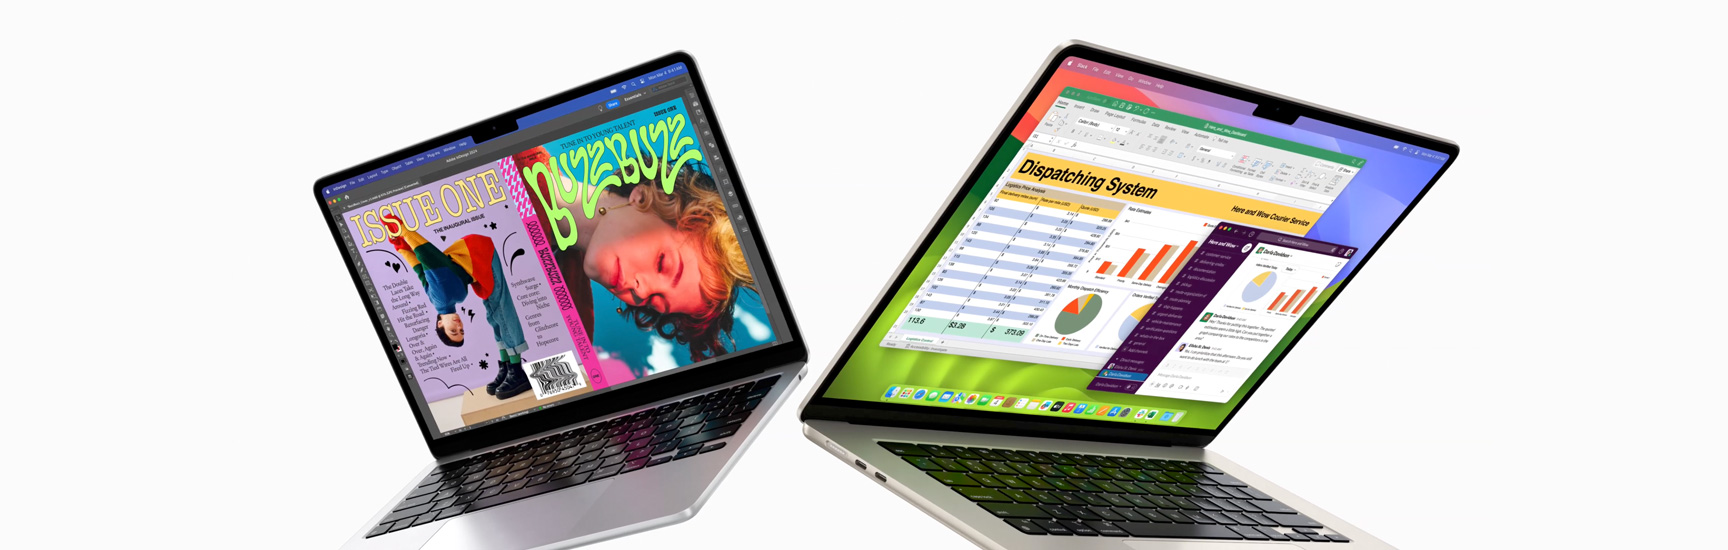 Una MacBook Air de 13 pulgadas del lado izquierdo y una MacBook Air de 15 pulgadas del lado derecho, ambas parcialmente abiertas. La pantalla de 13 pulgadas muestra la cubierta colorida de una revista creada con In Design. La pantalla de 15 pulgadas muestra Microsoft Excel y Slack abiertos.